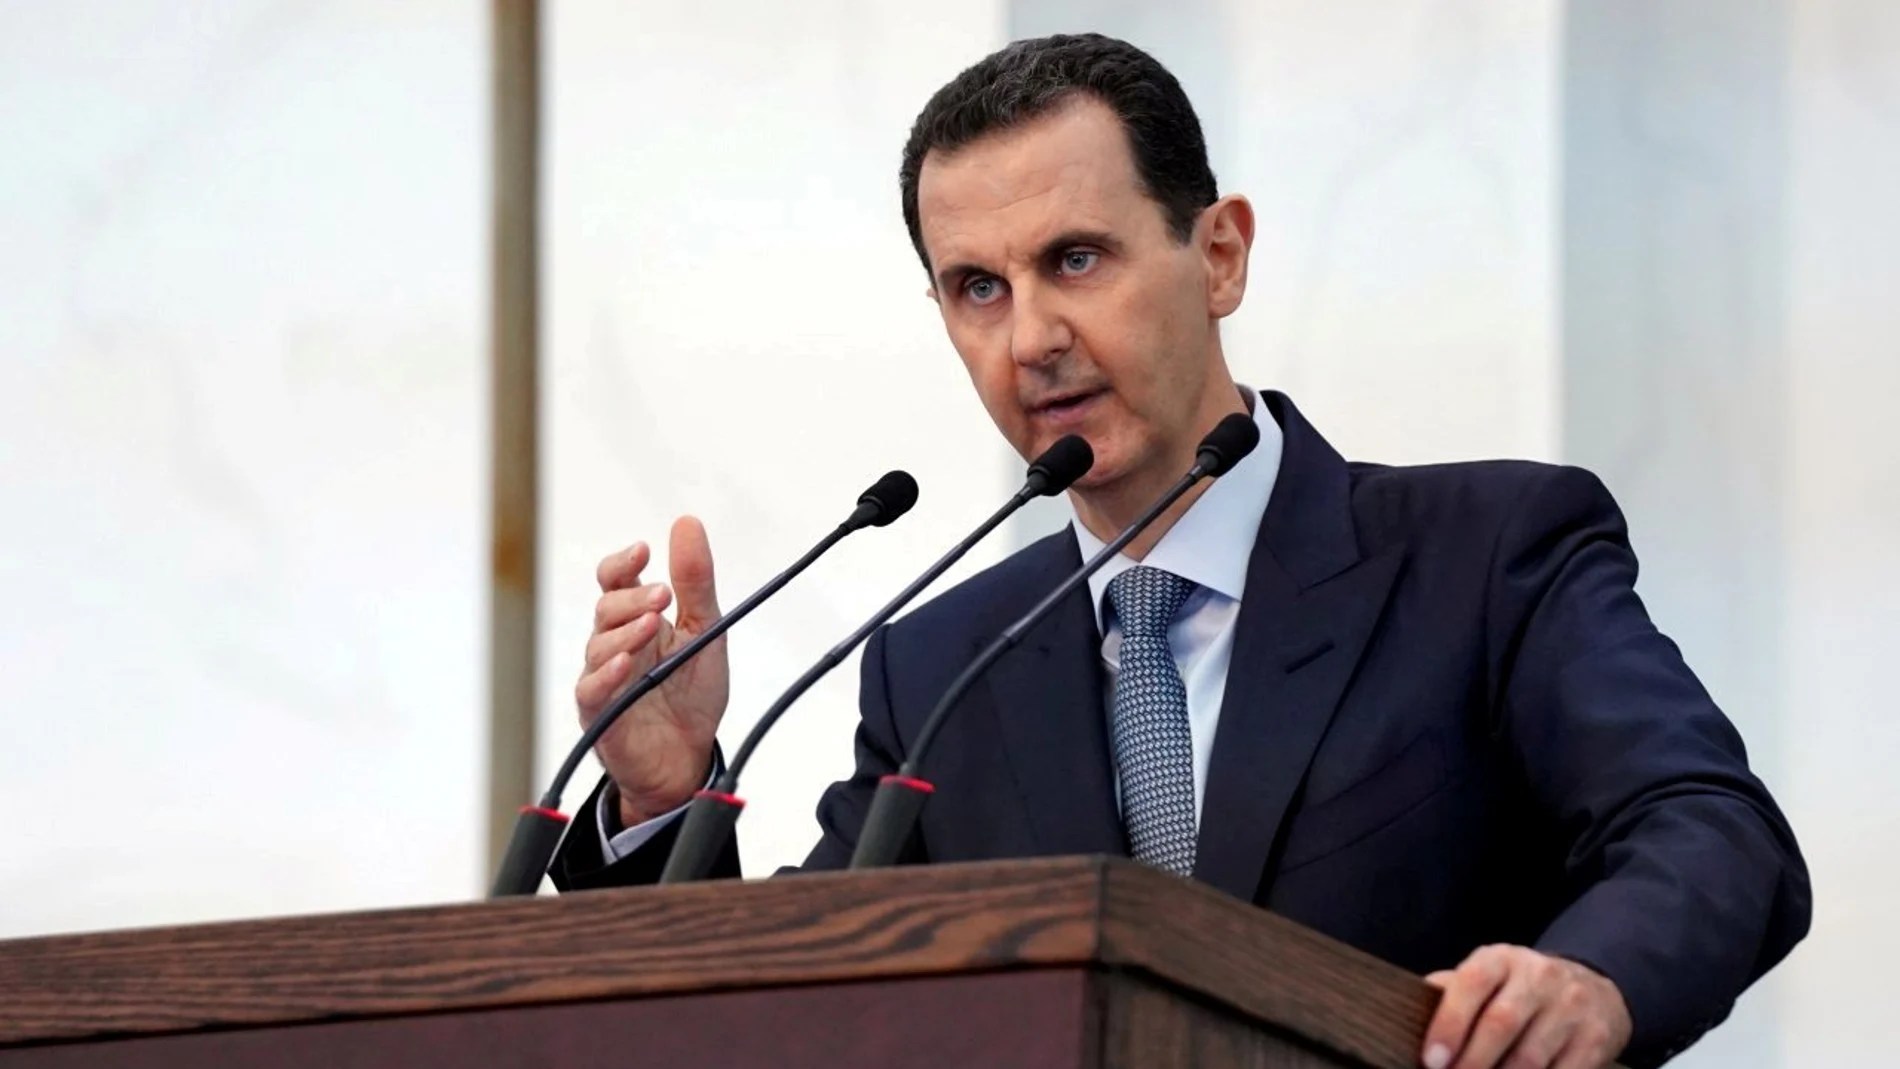 Tío del dictador sirio Al Asad es juzgado en España por blanquear 700 millones de euros